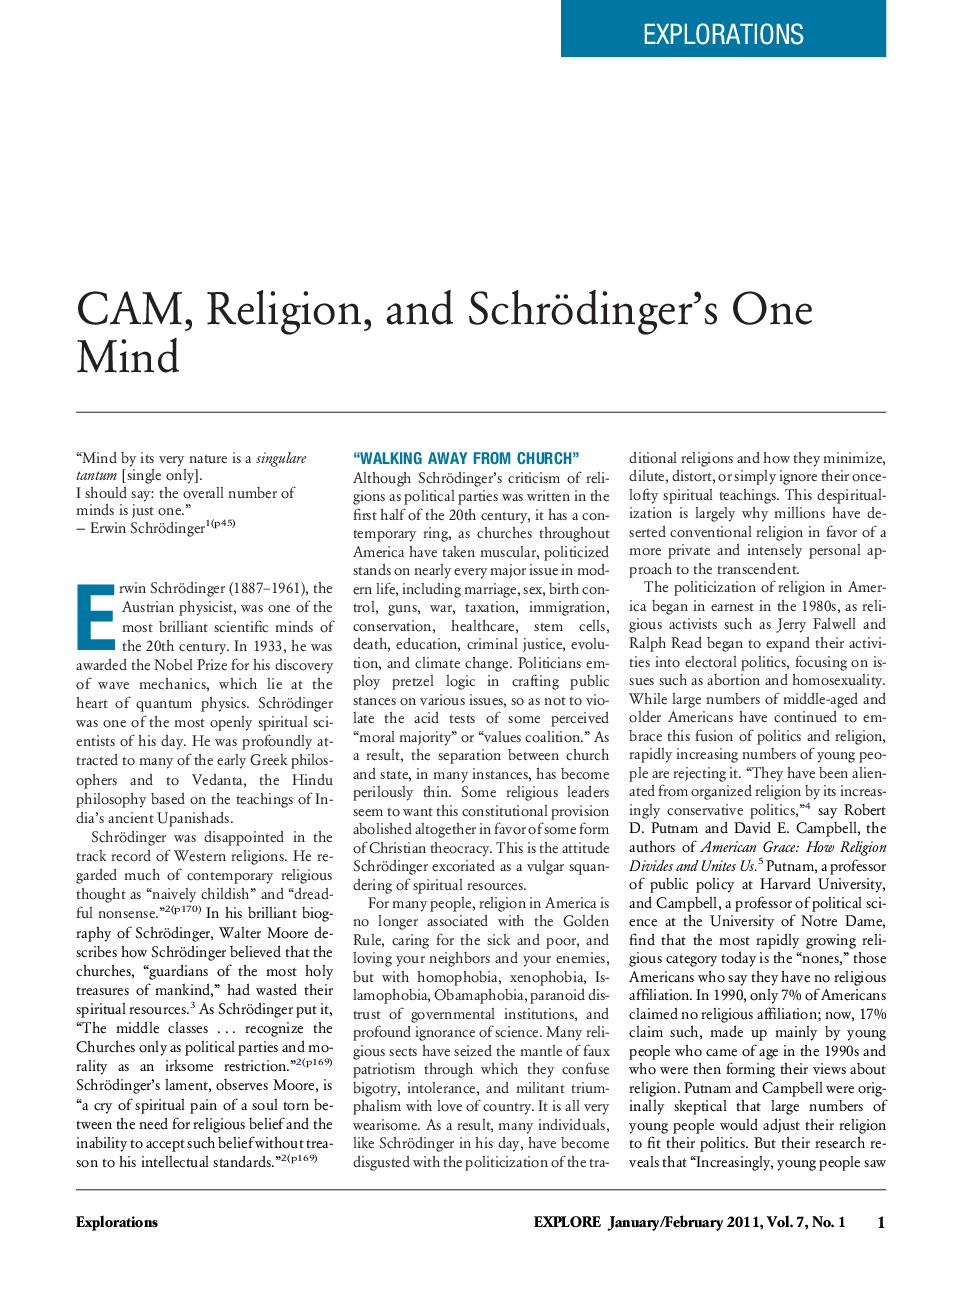 CAM, Religion, and Schrödinger's One Mind